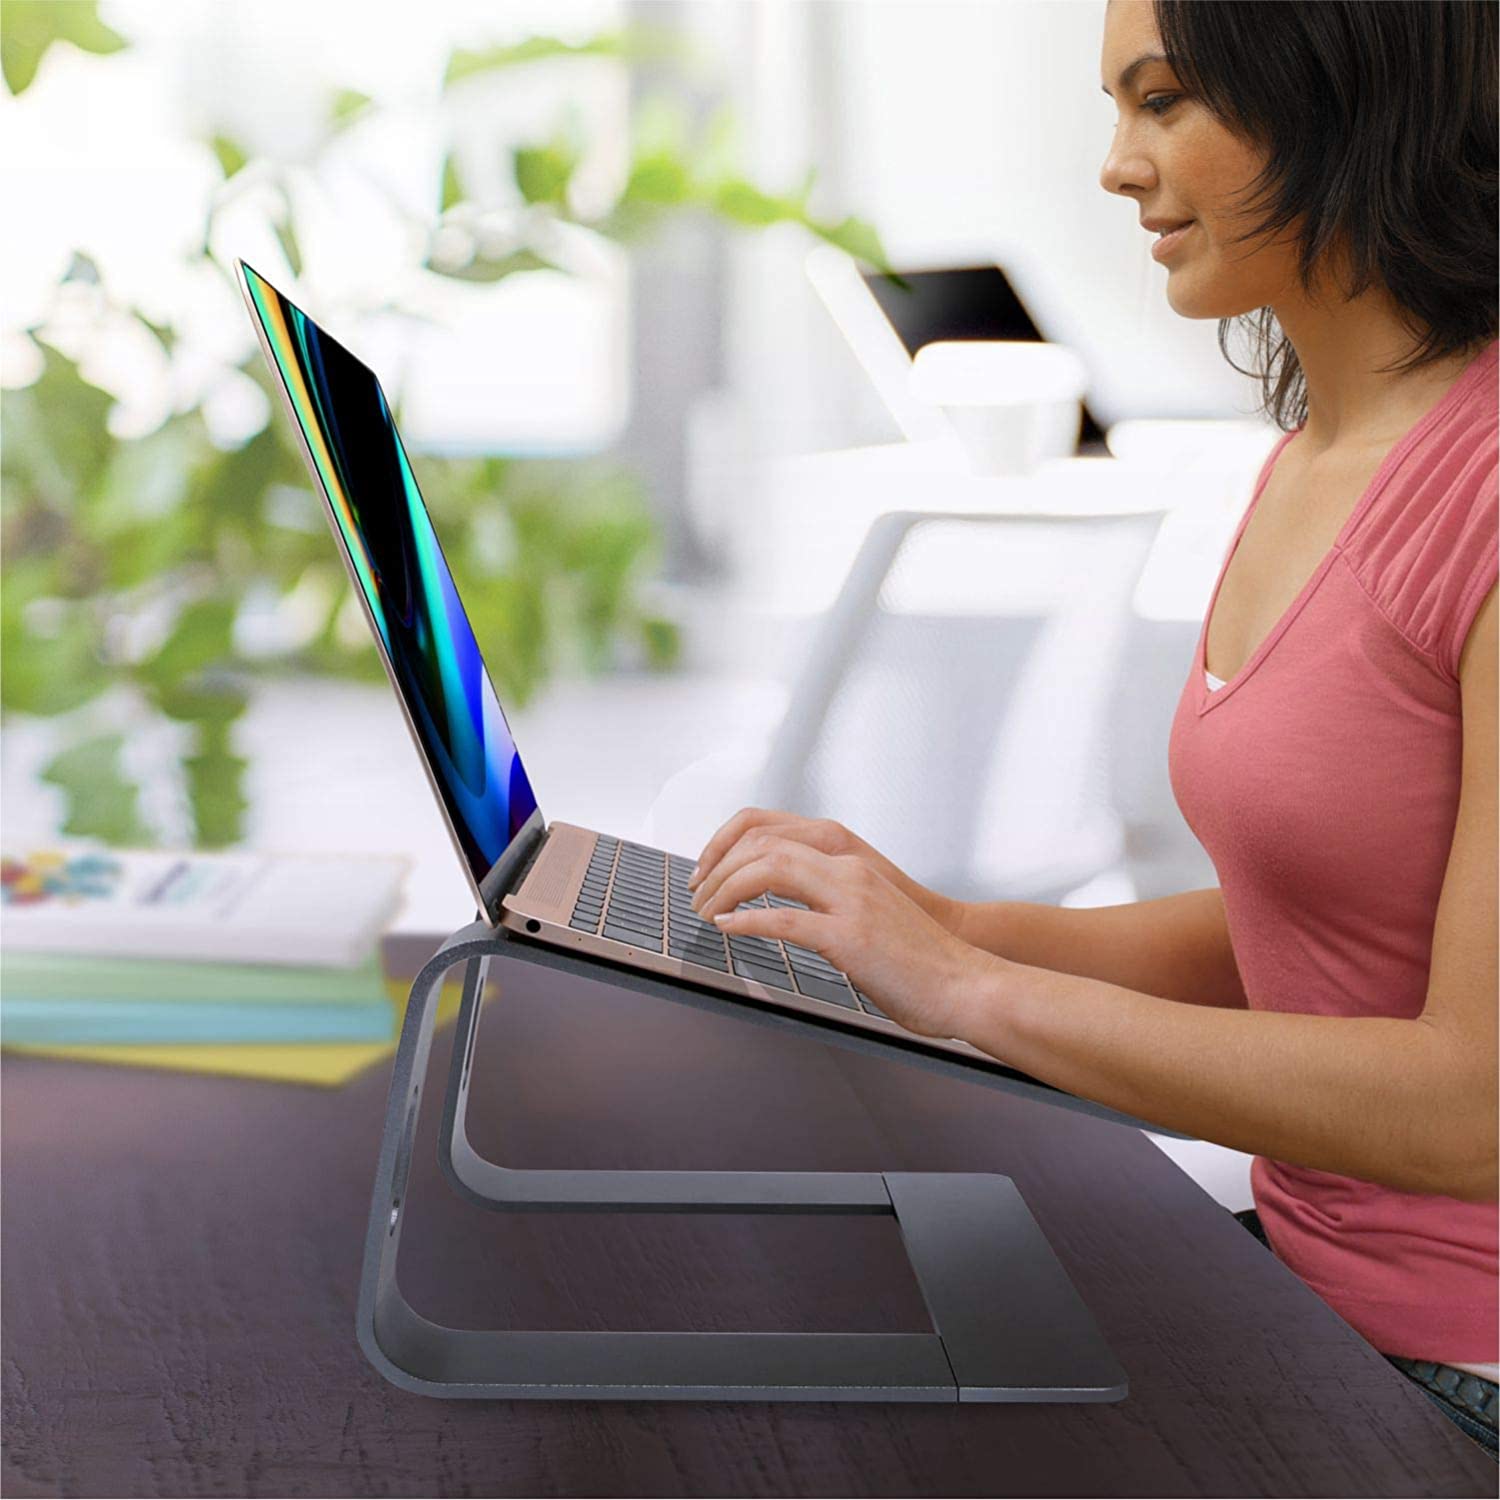 Giá Đỡ Máy Tính Laptop Chất Liệu Hợp Kim Nhôm Cao Cấp Model FS089- Hàng Chính Hãng Tamayoko